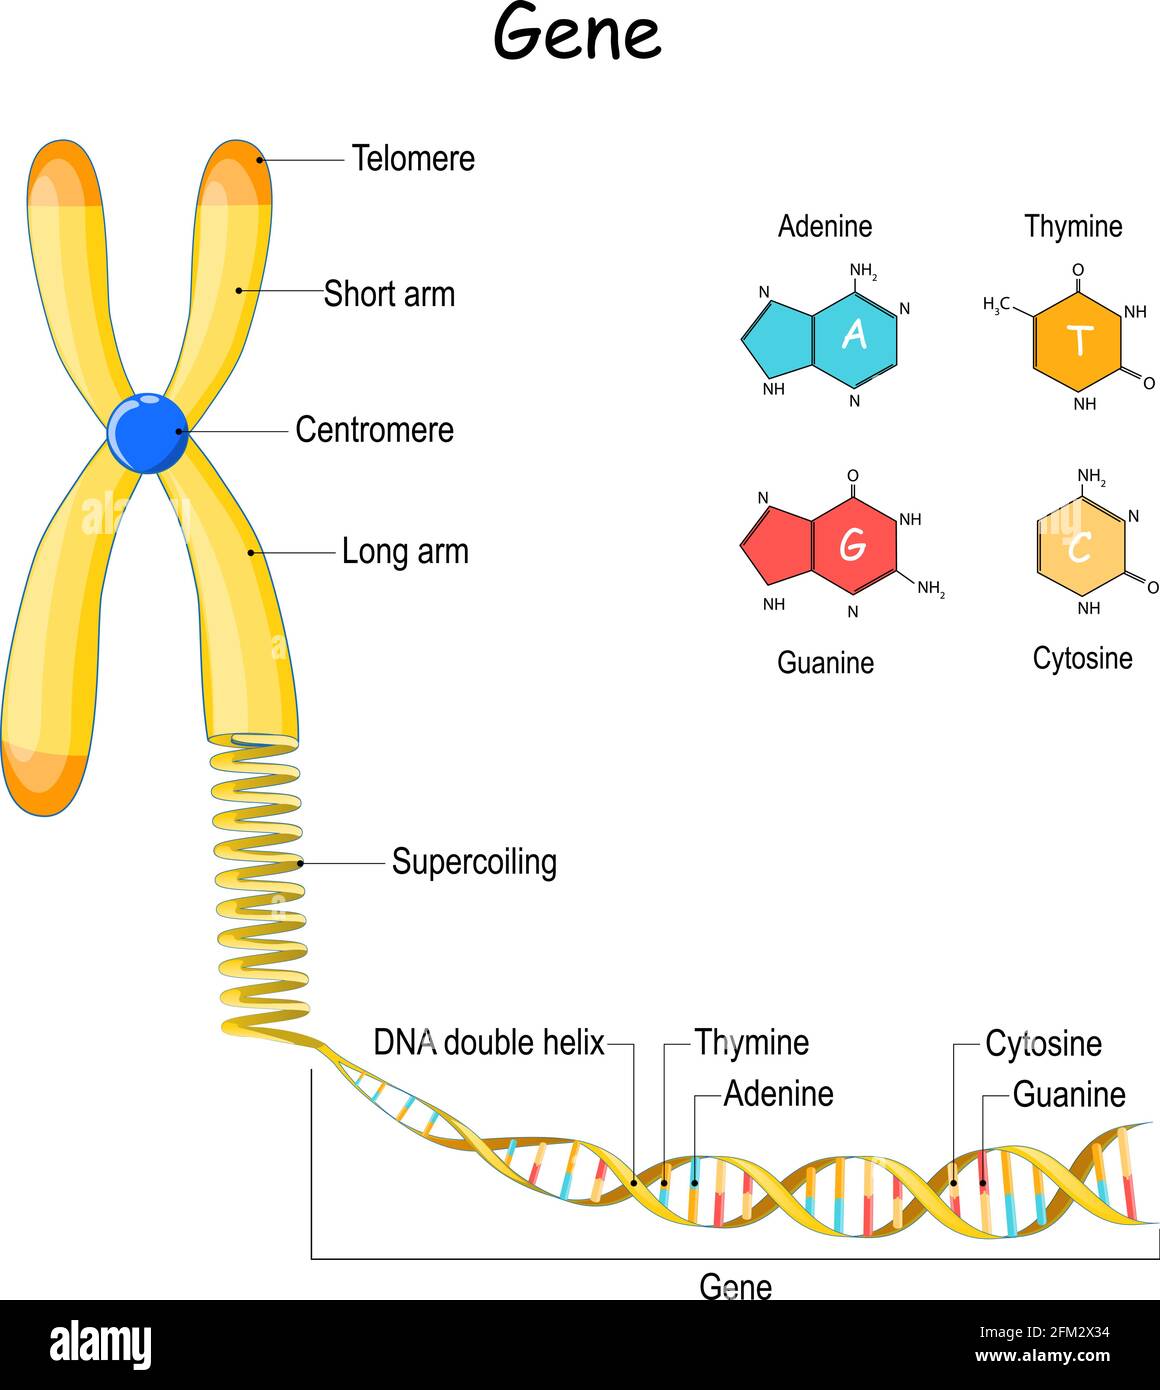 Genomsequenz. Von Chromosom zu Supercoiling, DNA und Gen. Telomere. vektordarstellung. Strukturformel von Adenin, Cytosin, Thymin Stock Vektor